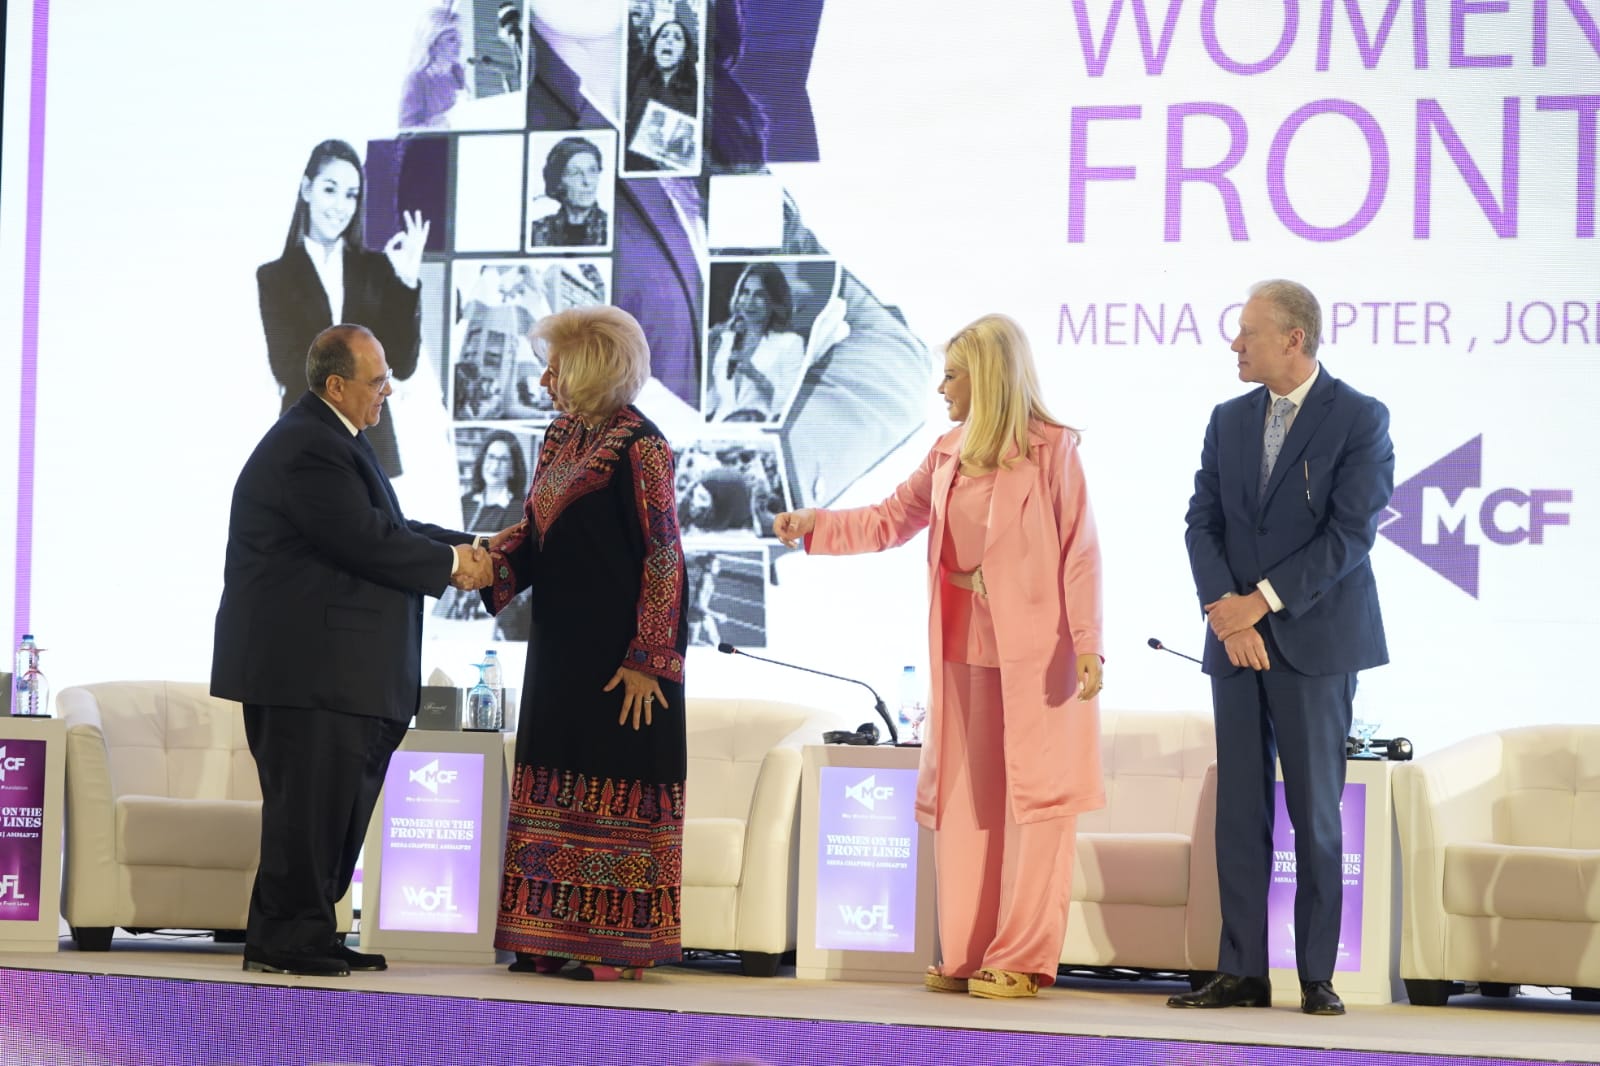 ضمن فعاليات مؤتمر "نساء على خطوط المواجهة" "WOFL" في الأردن وزيرة الثقافة تكرّم المنتج صادق الصبّاح 